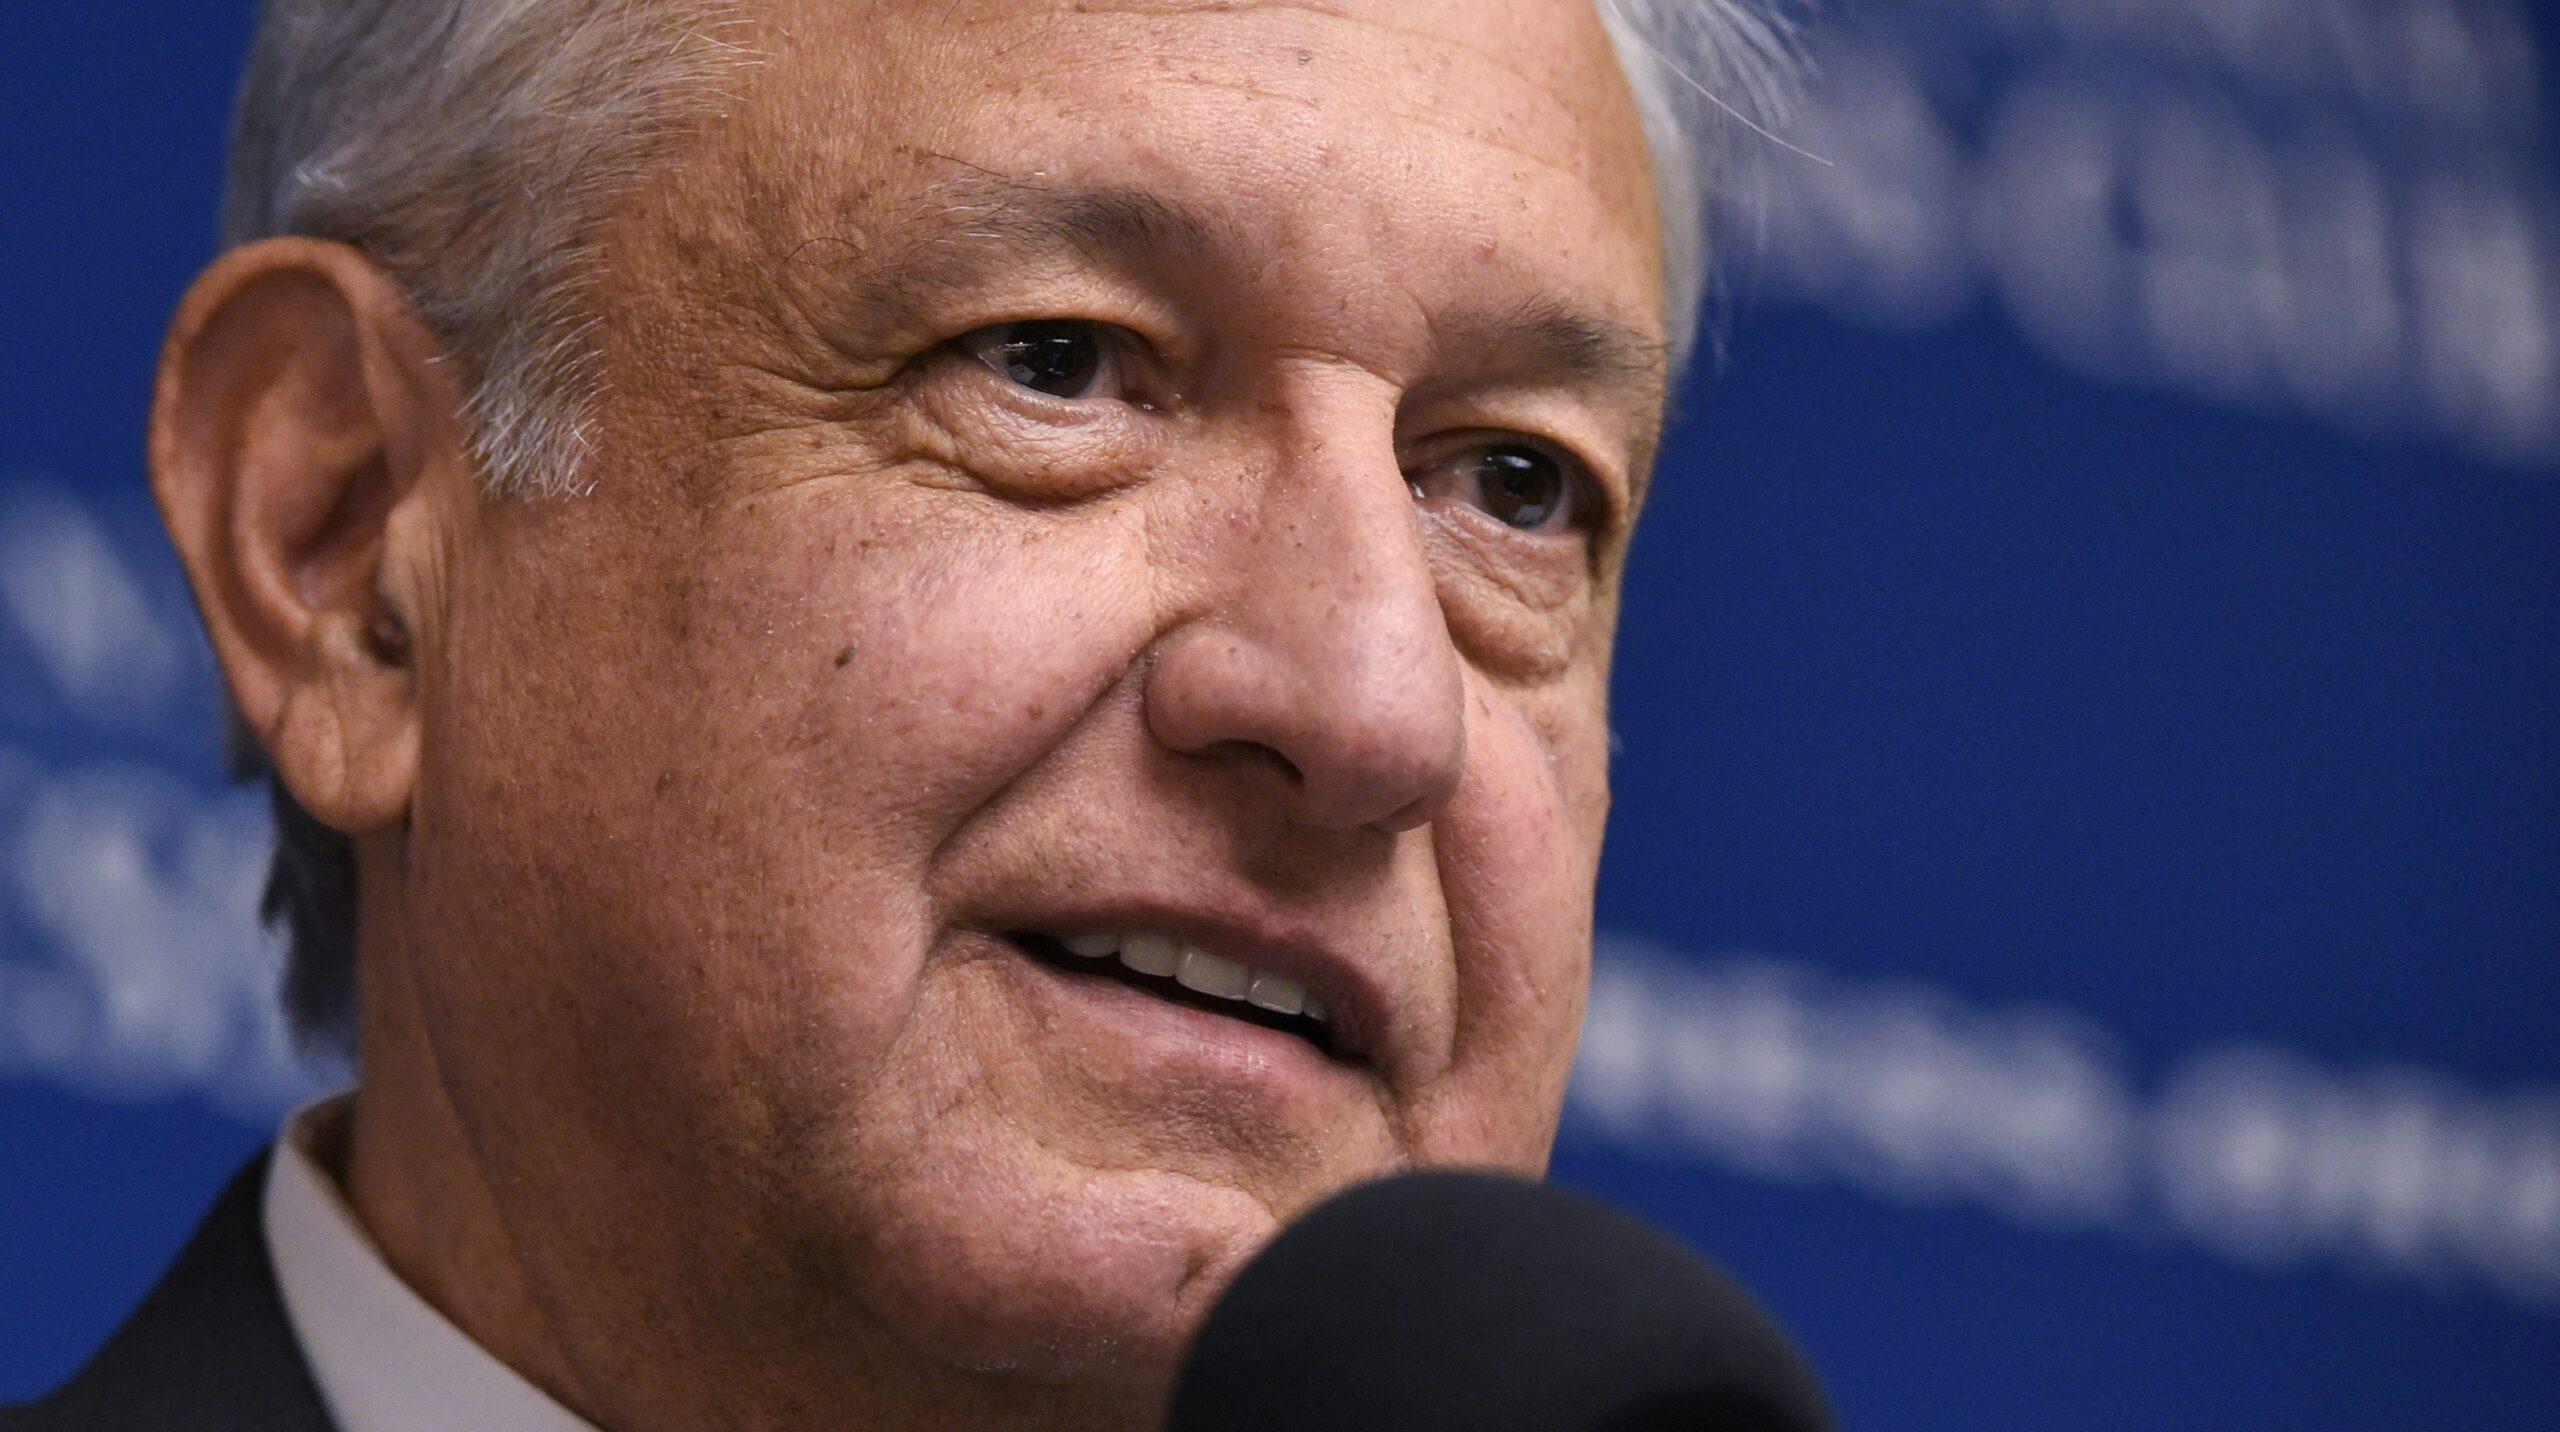 Fue un acto de provocación, insiste López Obrador sobre protesta en su contra por Ayotzinapa